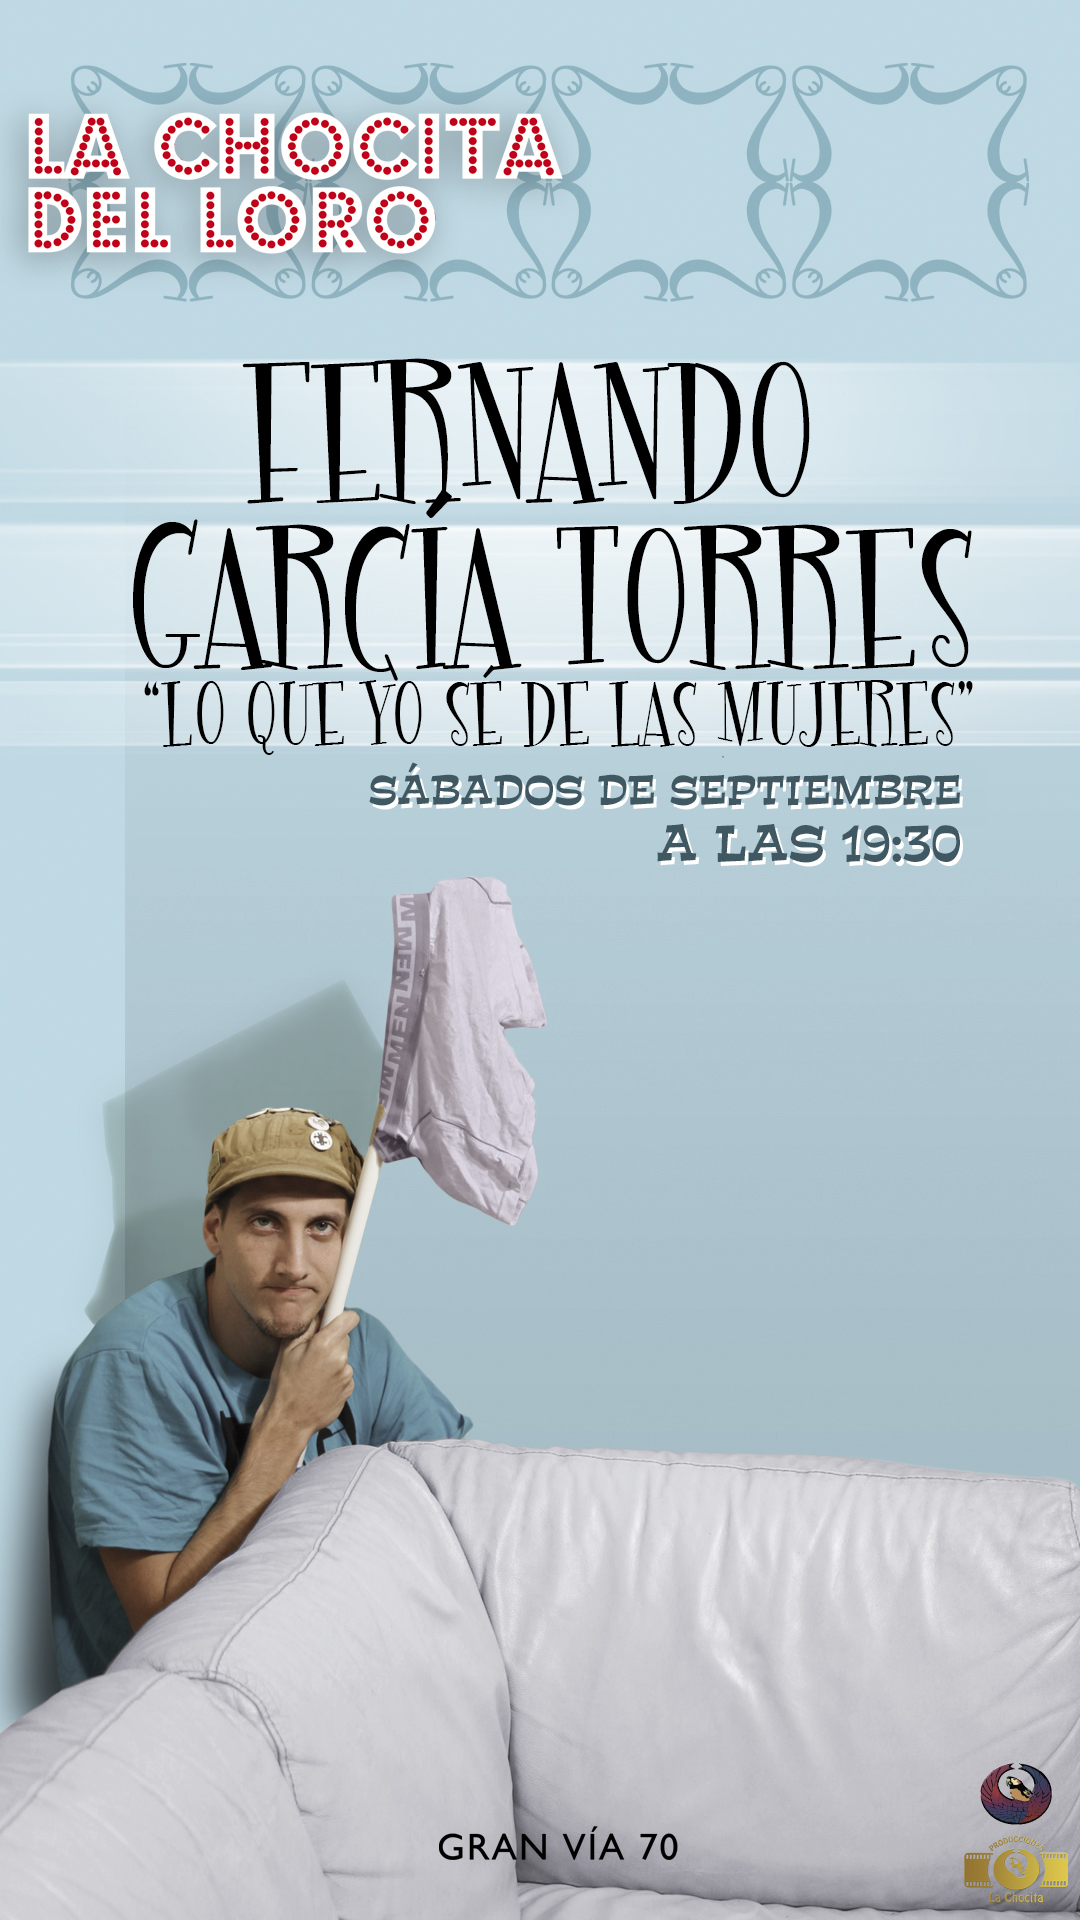 que yo sé de las mujeres" el cómico Fernándo García Torres - Laballo Comunicación